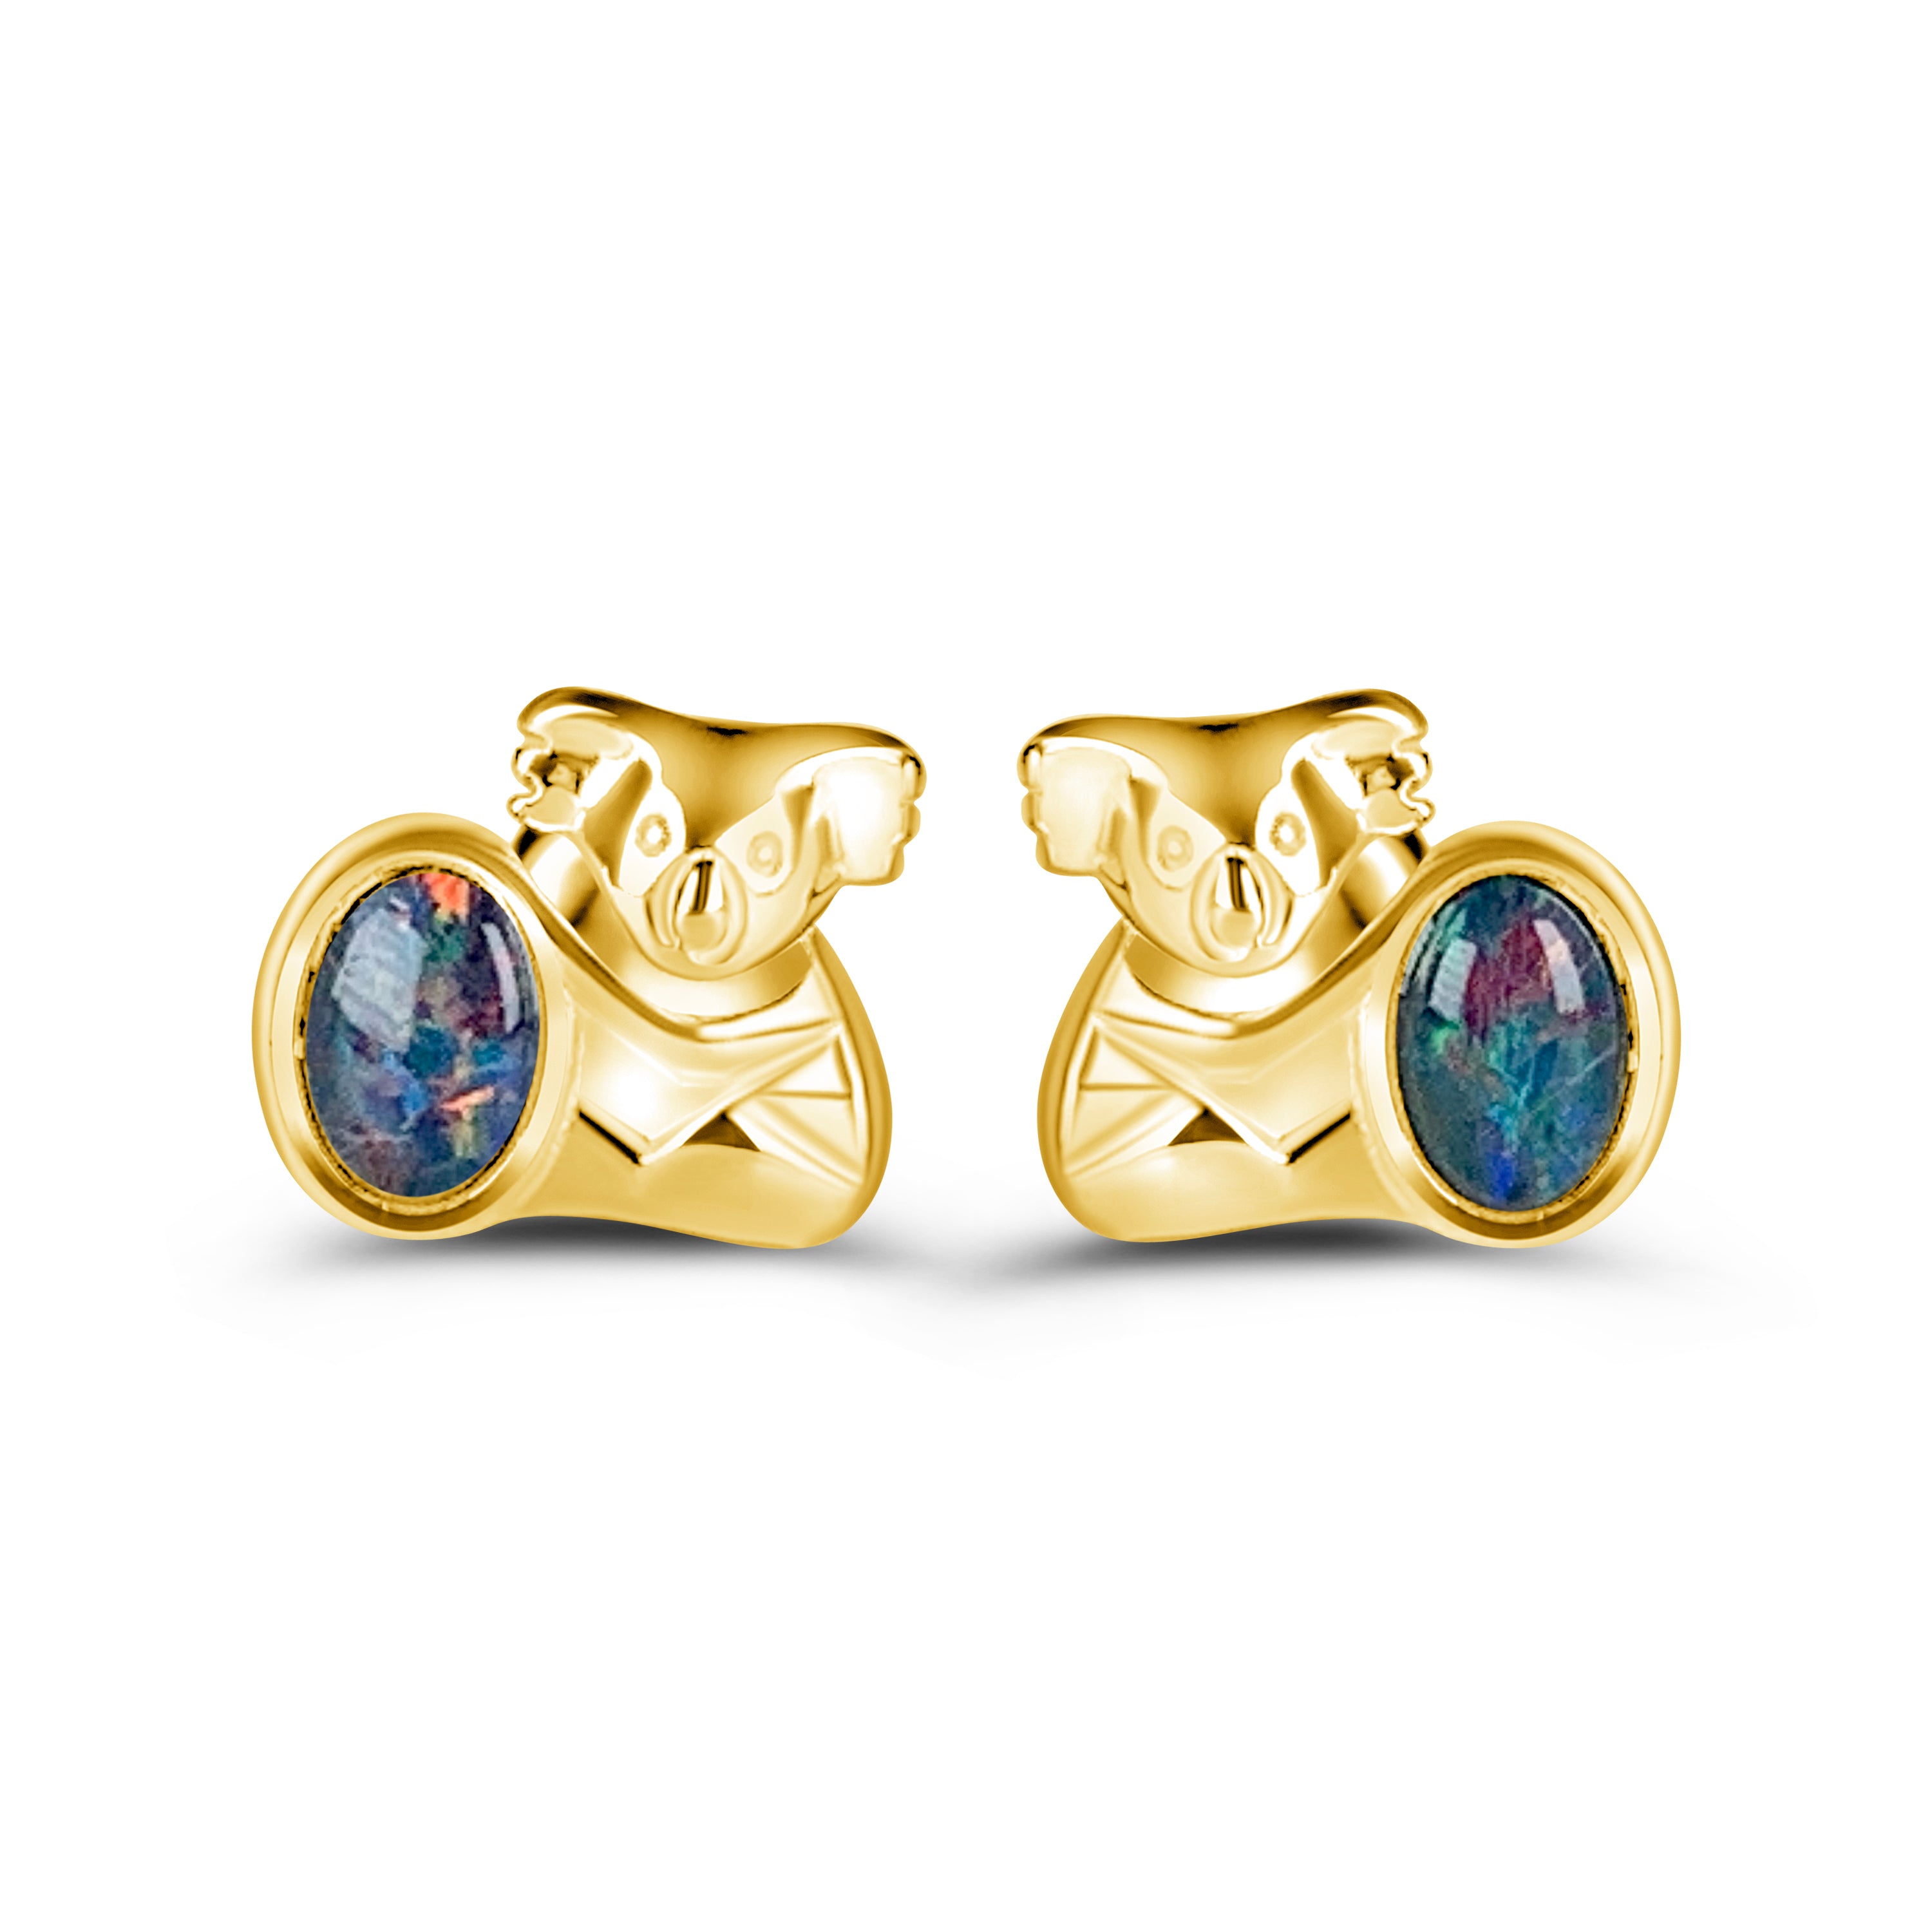 Gold plated Koala stud earrings 6x4mm Opals - Masterpiece Jewellery Opal & Gems Sydney Australia | Online Shop